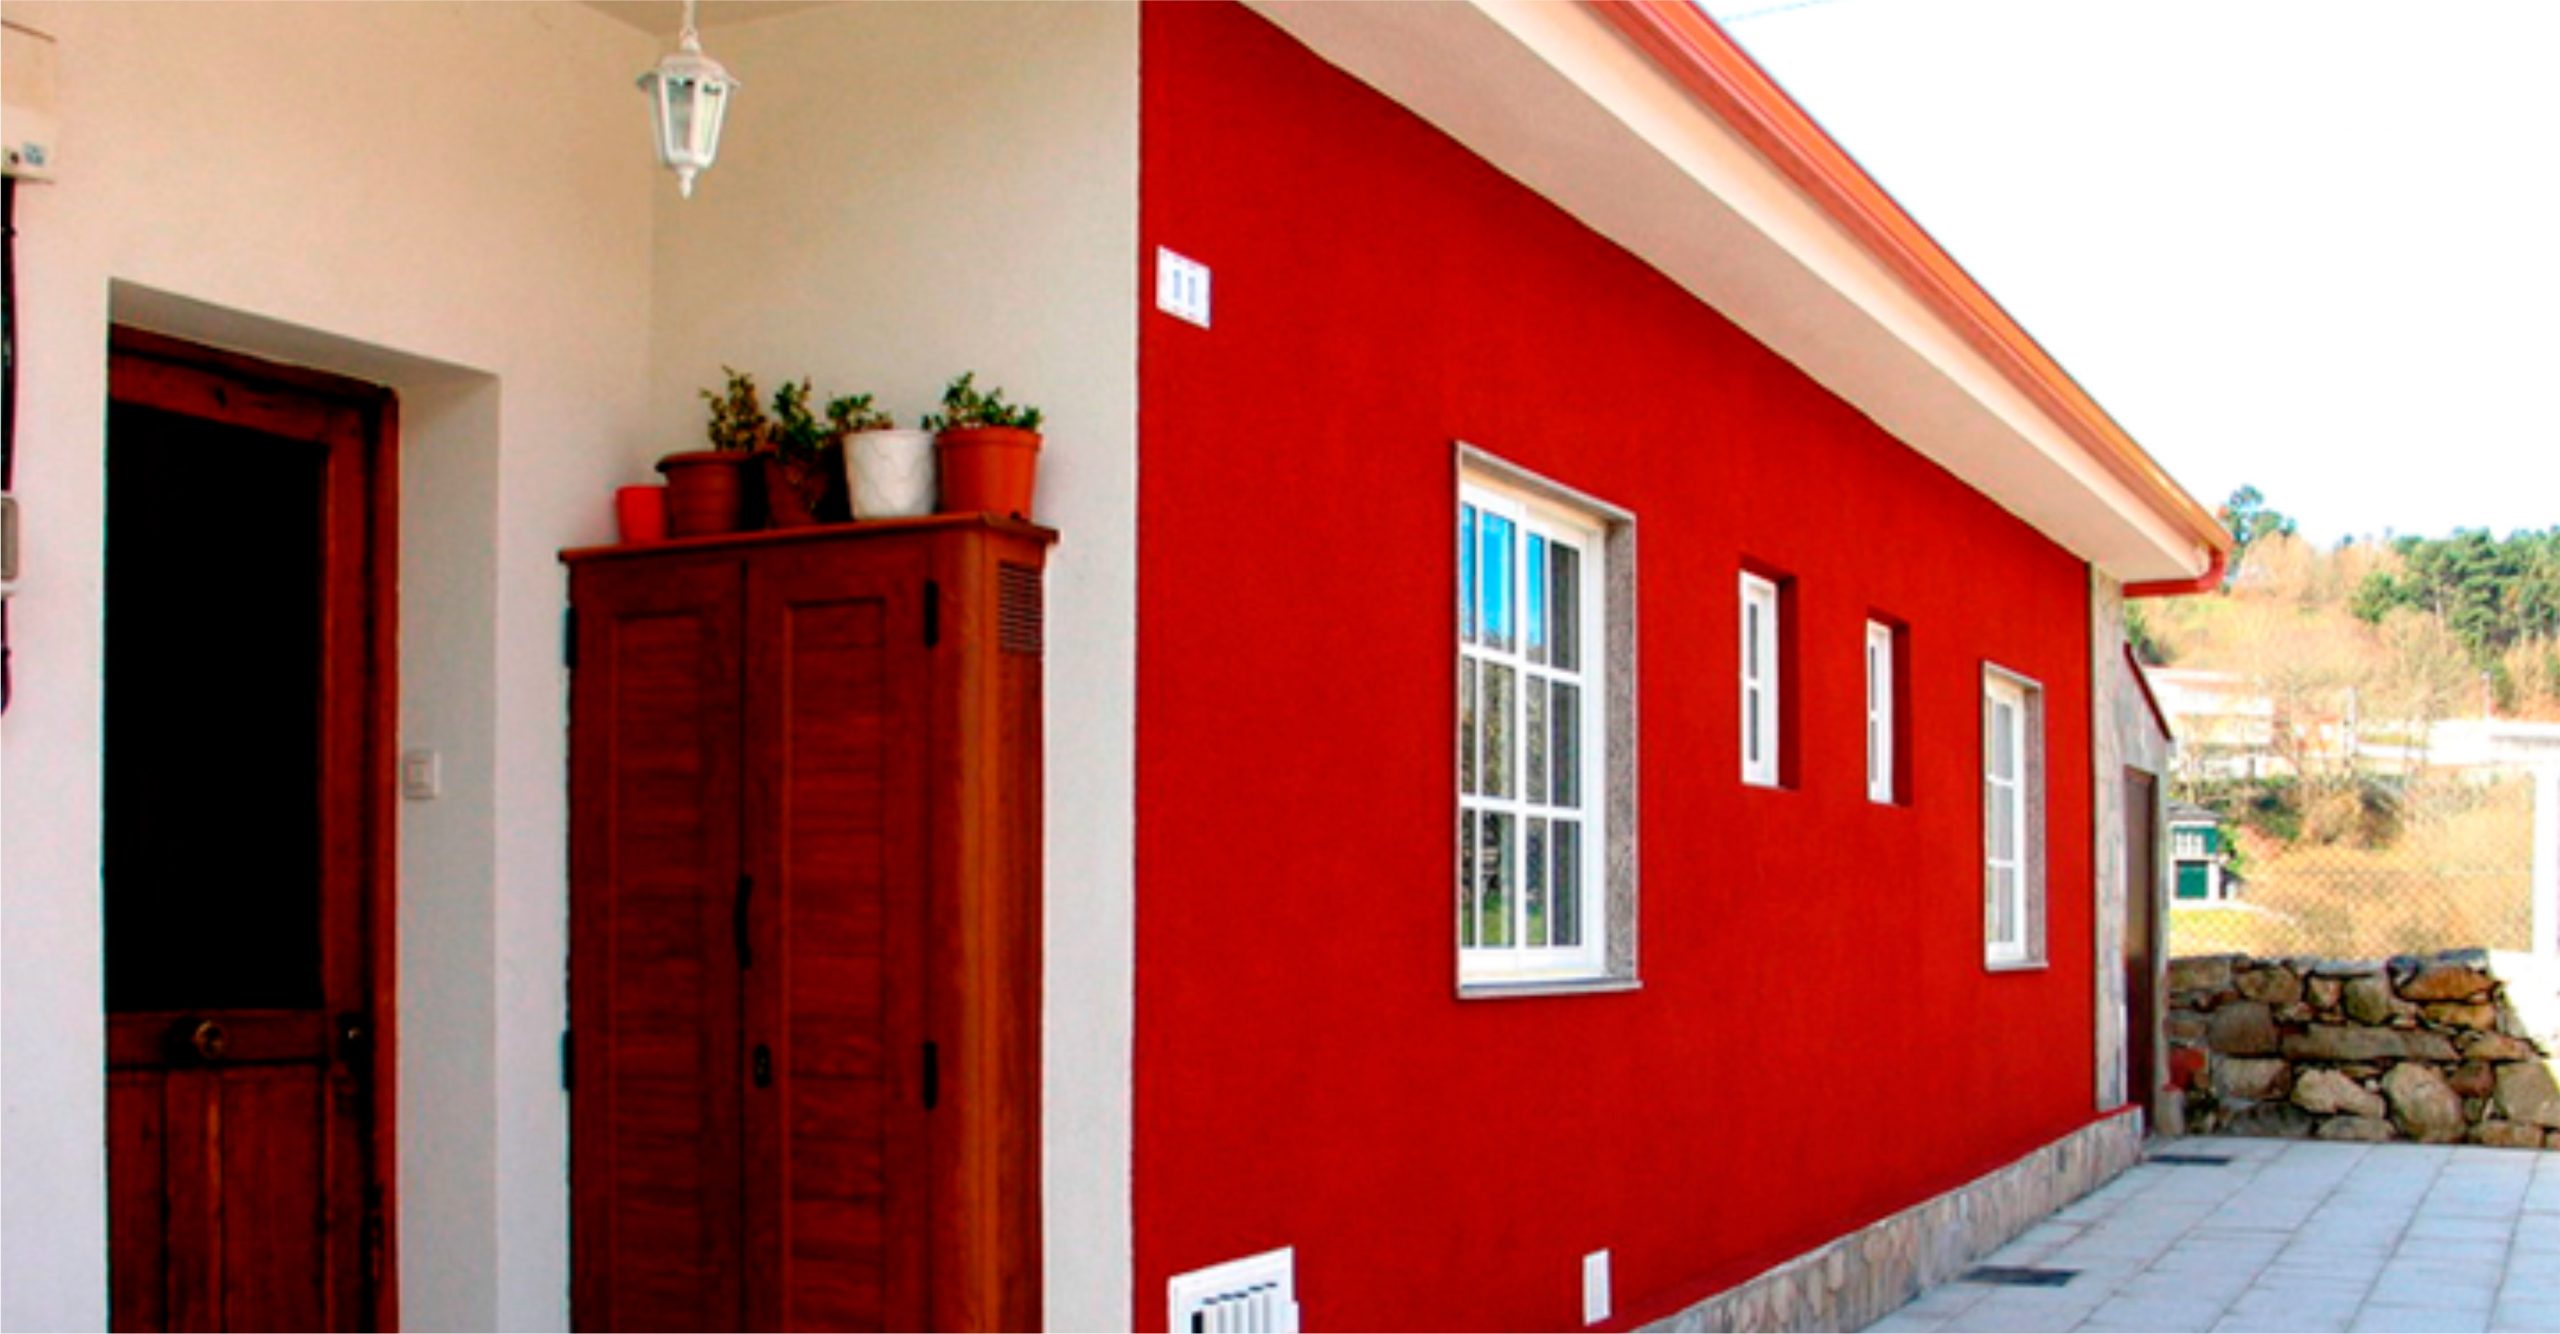 Top 160+ Imagenes casas pintadas por fuera 